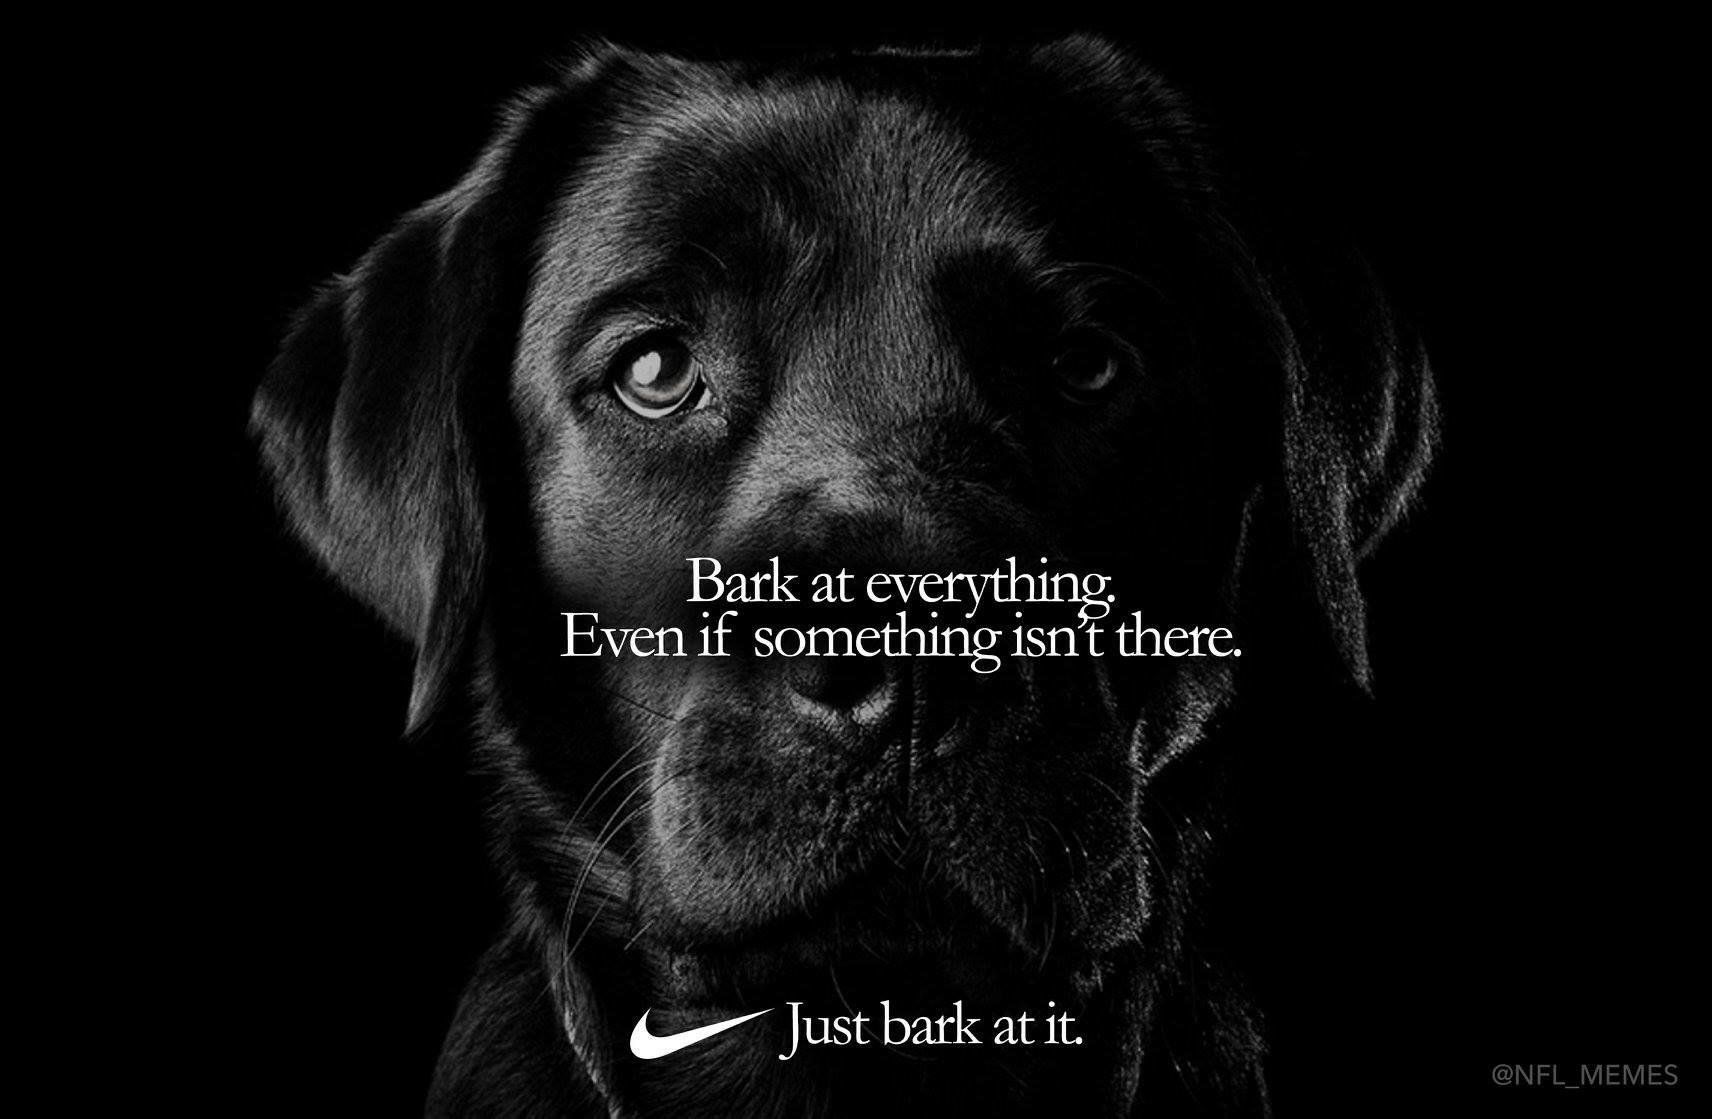 Just bark at it